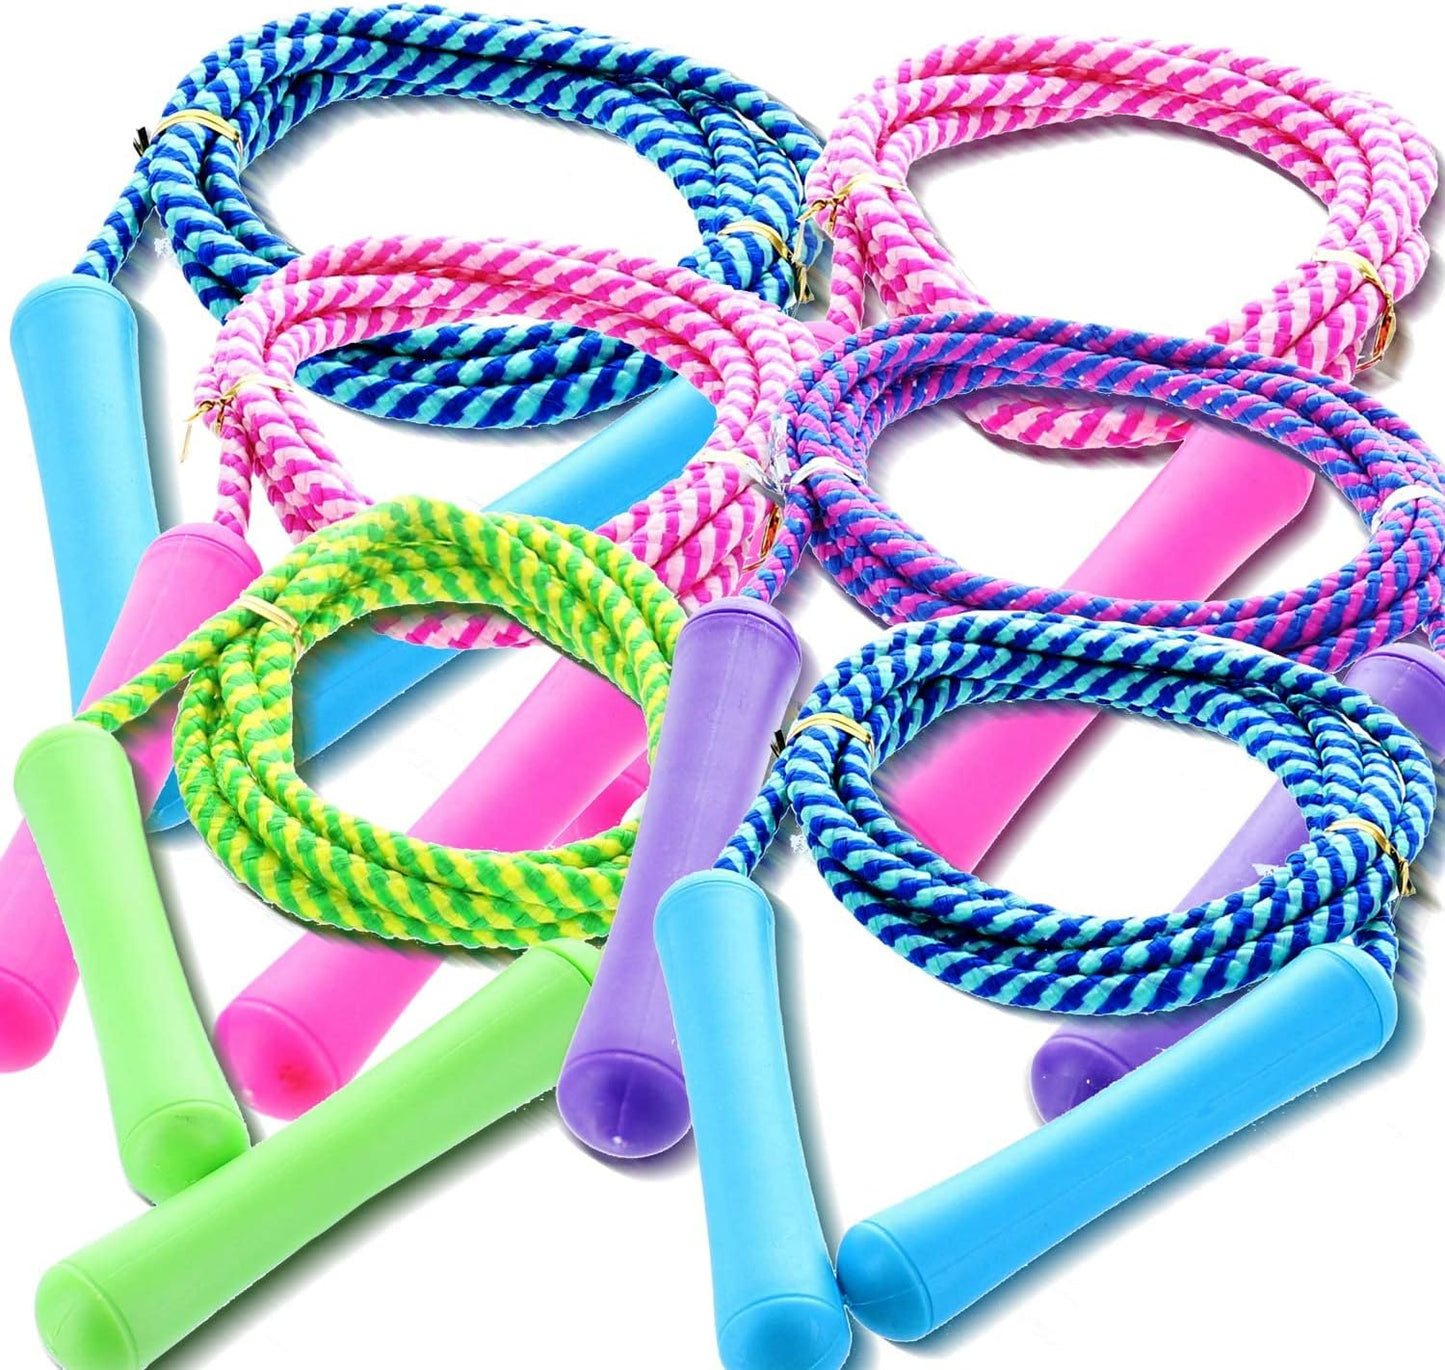 GIFTEXPRESS Cuerda de saltar colorida de tamaño ajustable para niños y adolescentes, varios colores (paquete de 6) 